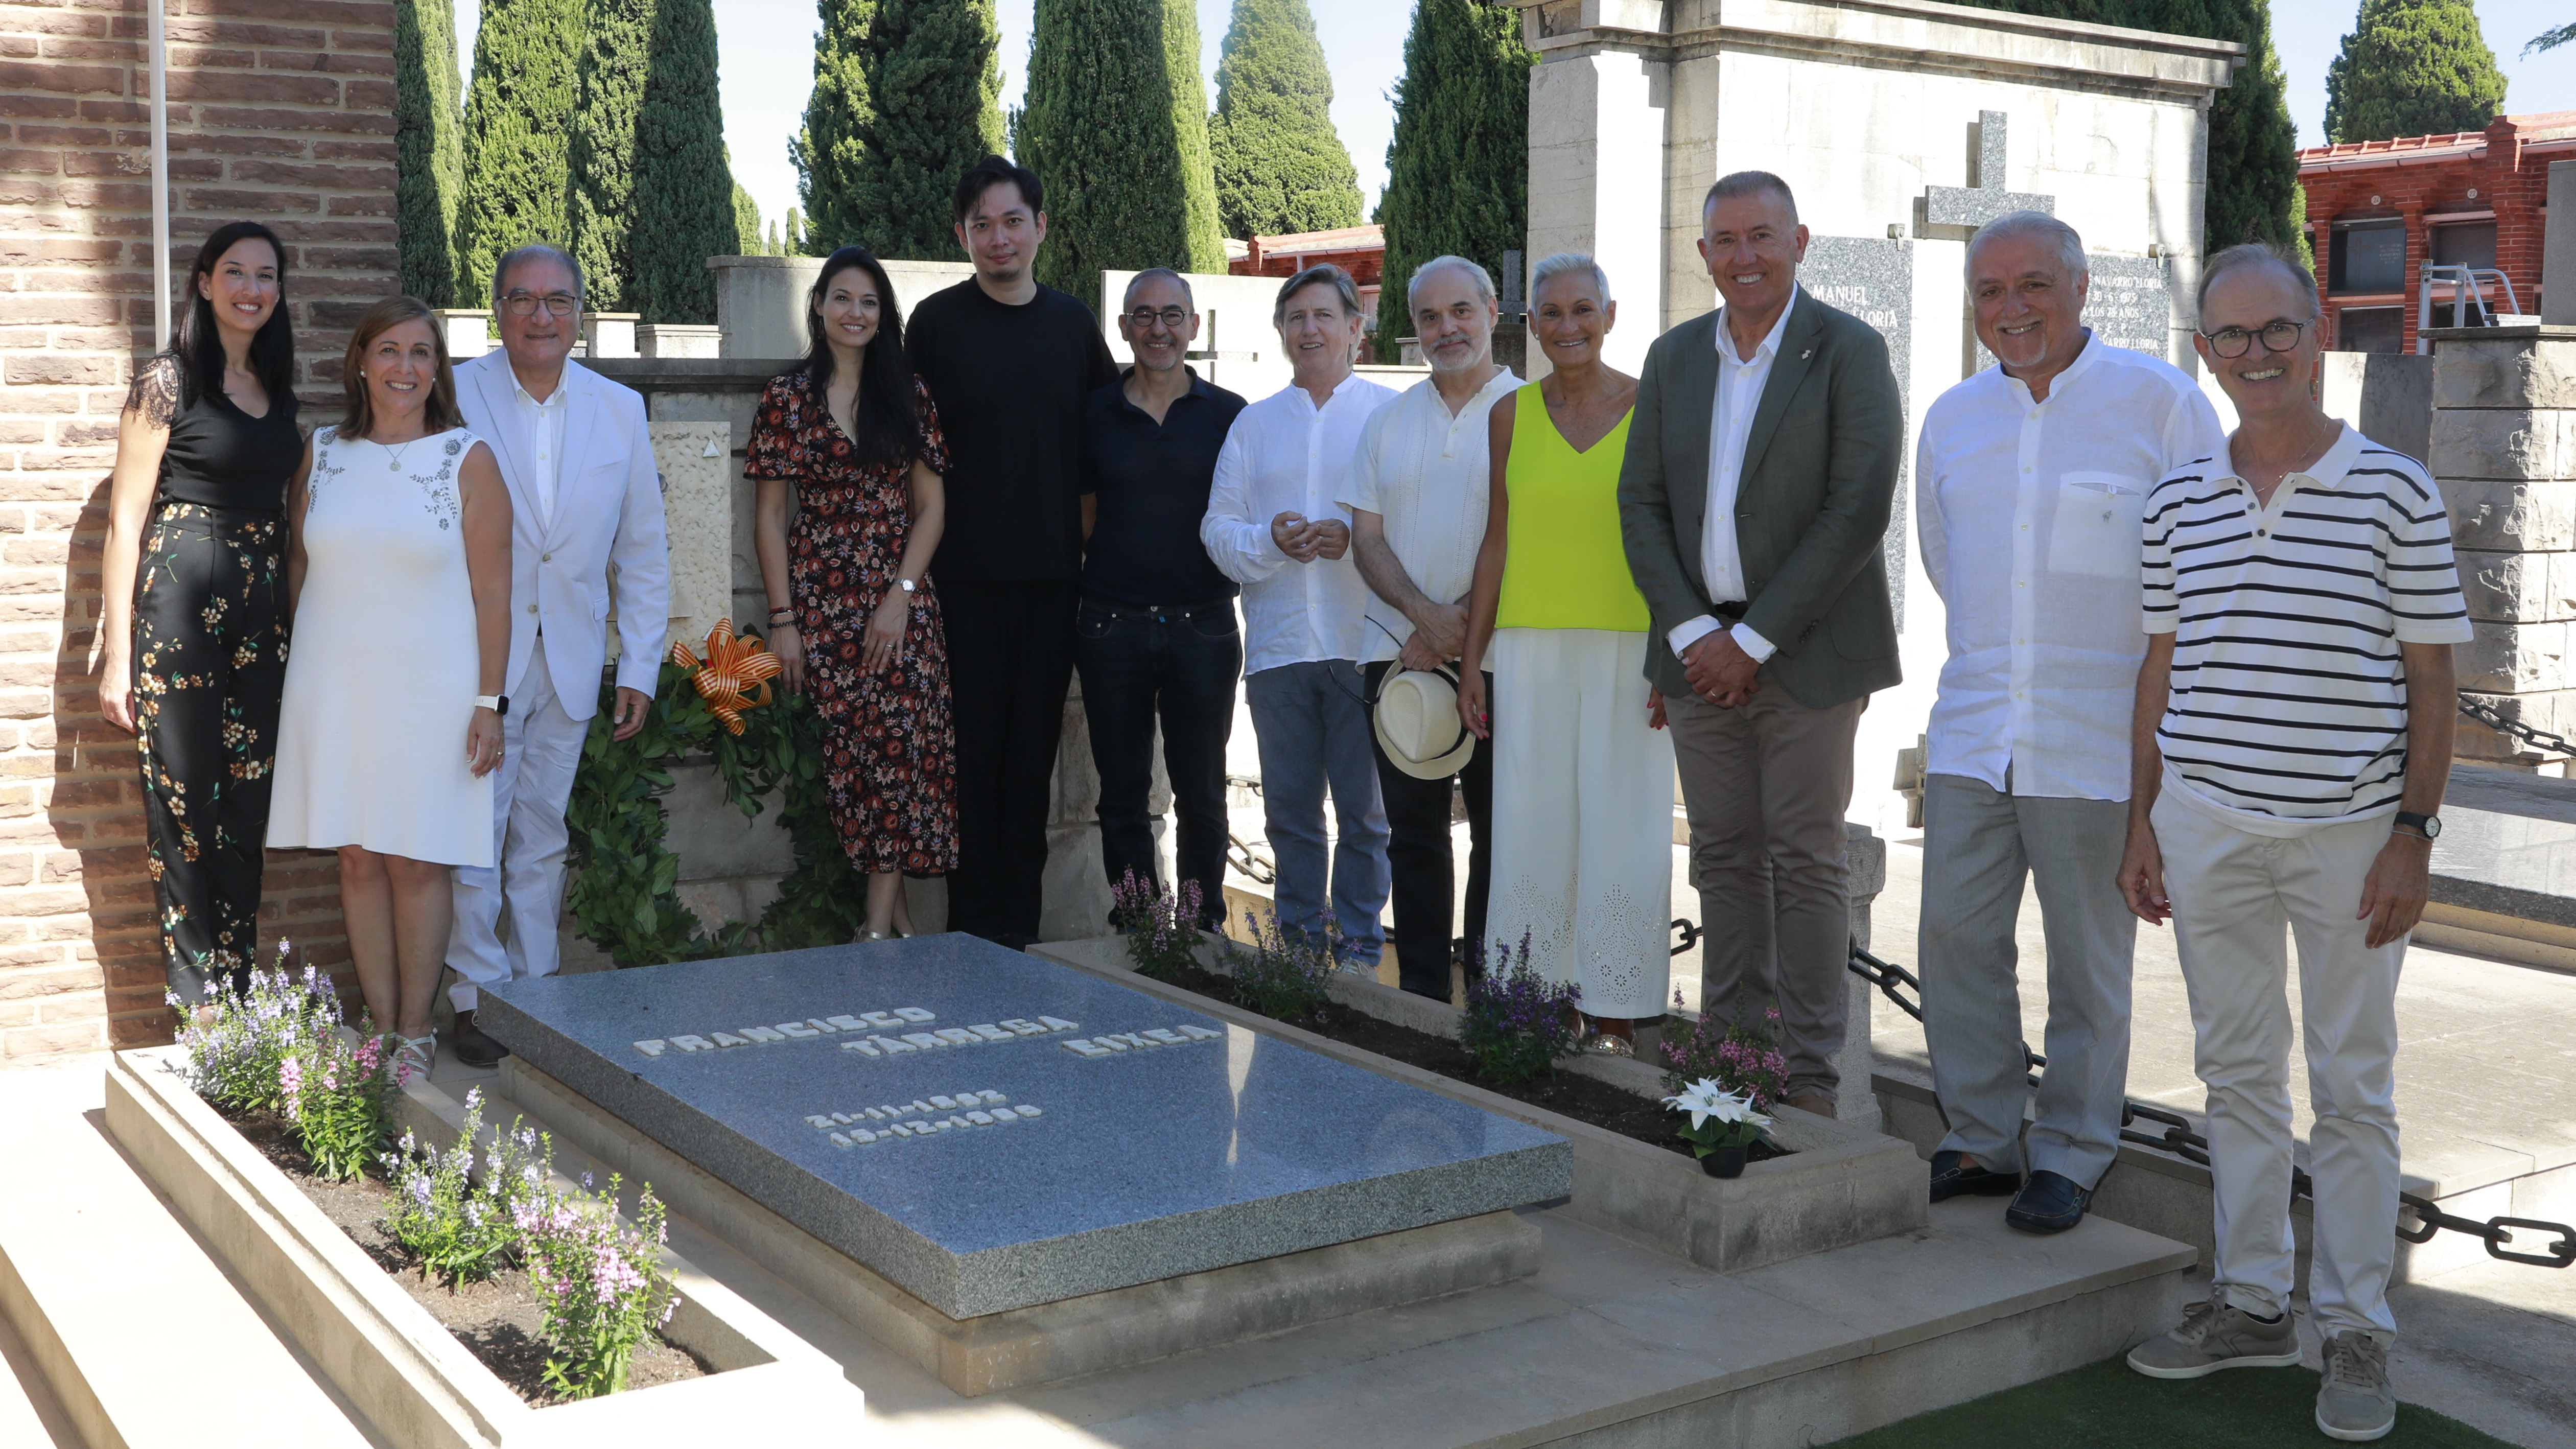 El Ayuntamiento de Castellón participa en los actos de homenaje a Francisco Tárrega, uno de sus músicos más universales